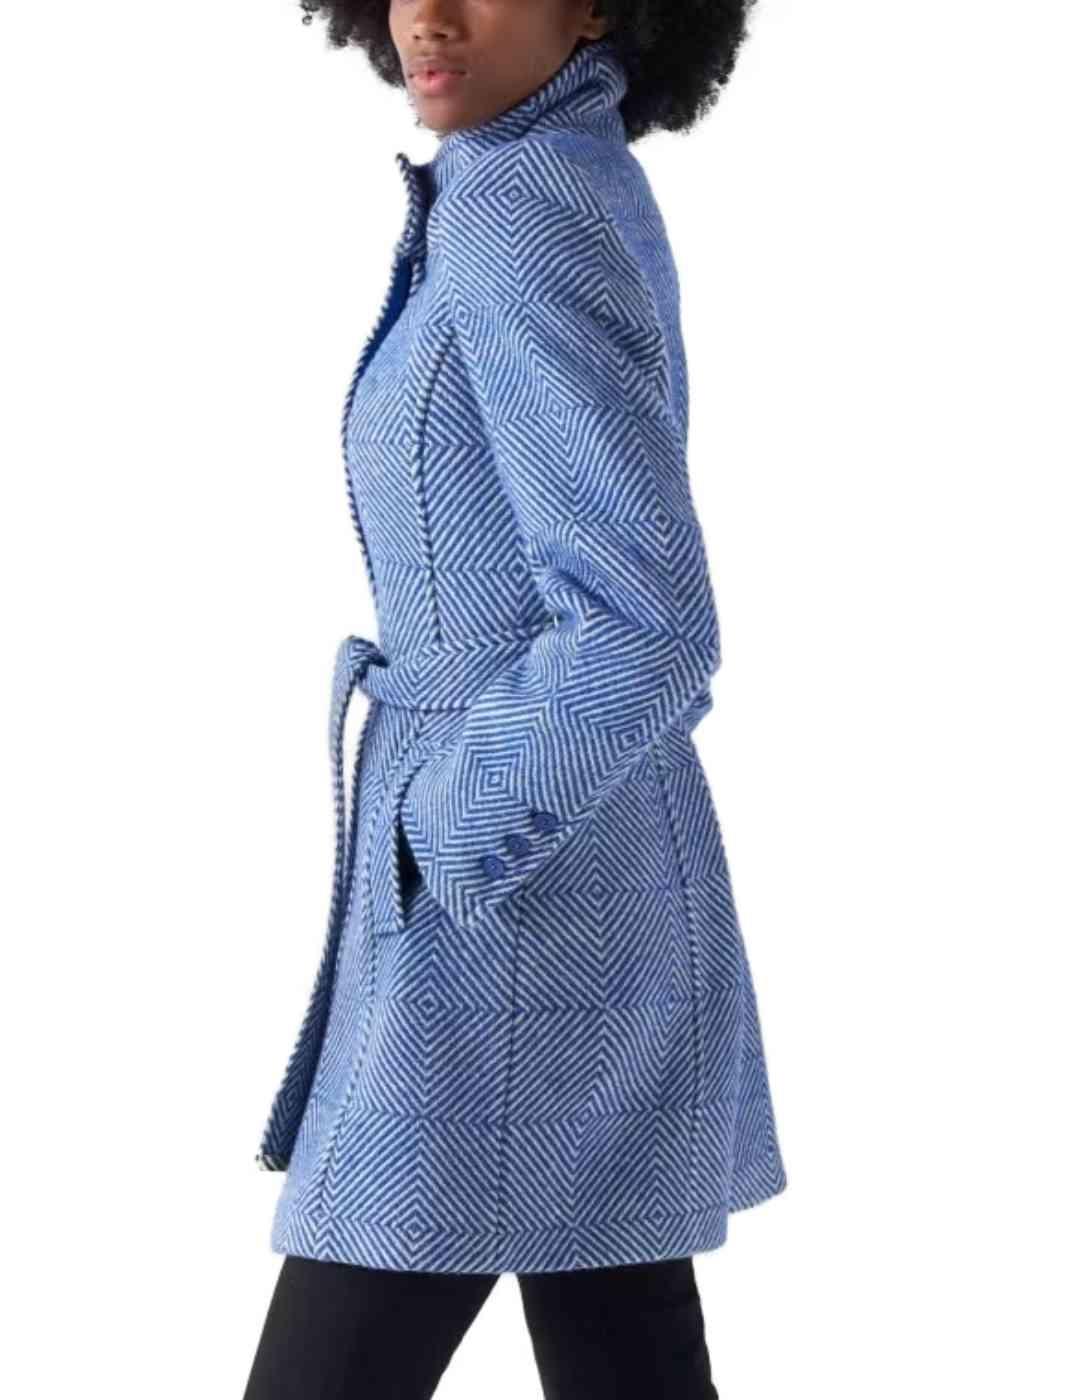 Abrigo Salsa Burel de lana geométrico azul y blanco de mujer